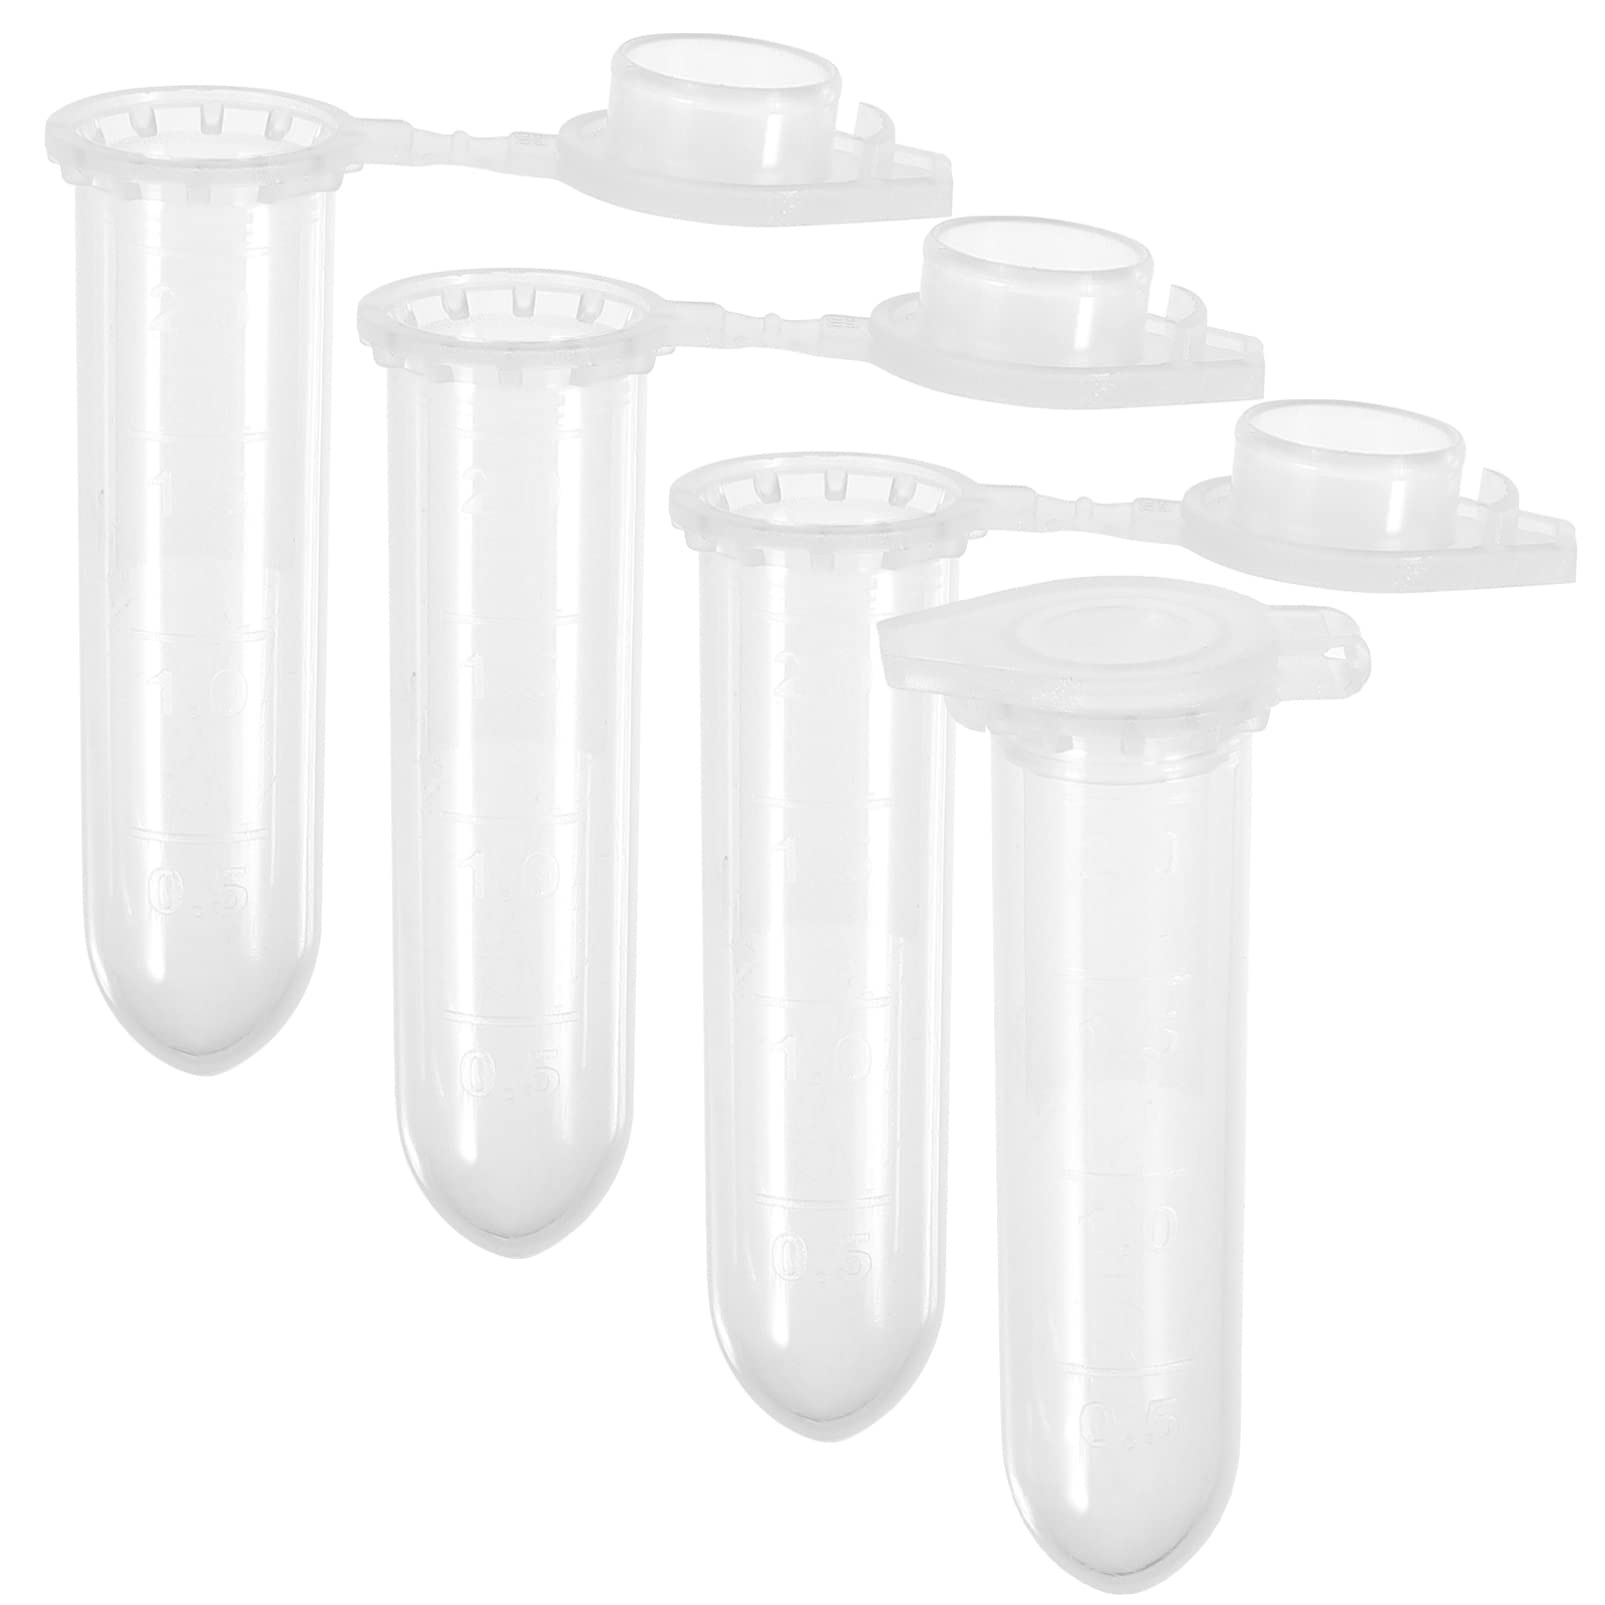 UKCOCO 500 Stück 2 ml Zentrifugenröhrchen Zentrifugenbehälter kann mit Snap Cap Runde Lab Sample Supply Bottom